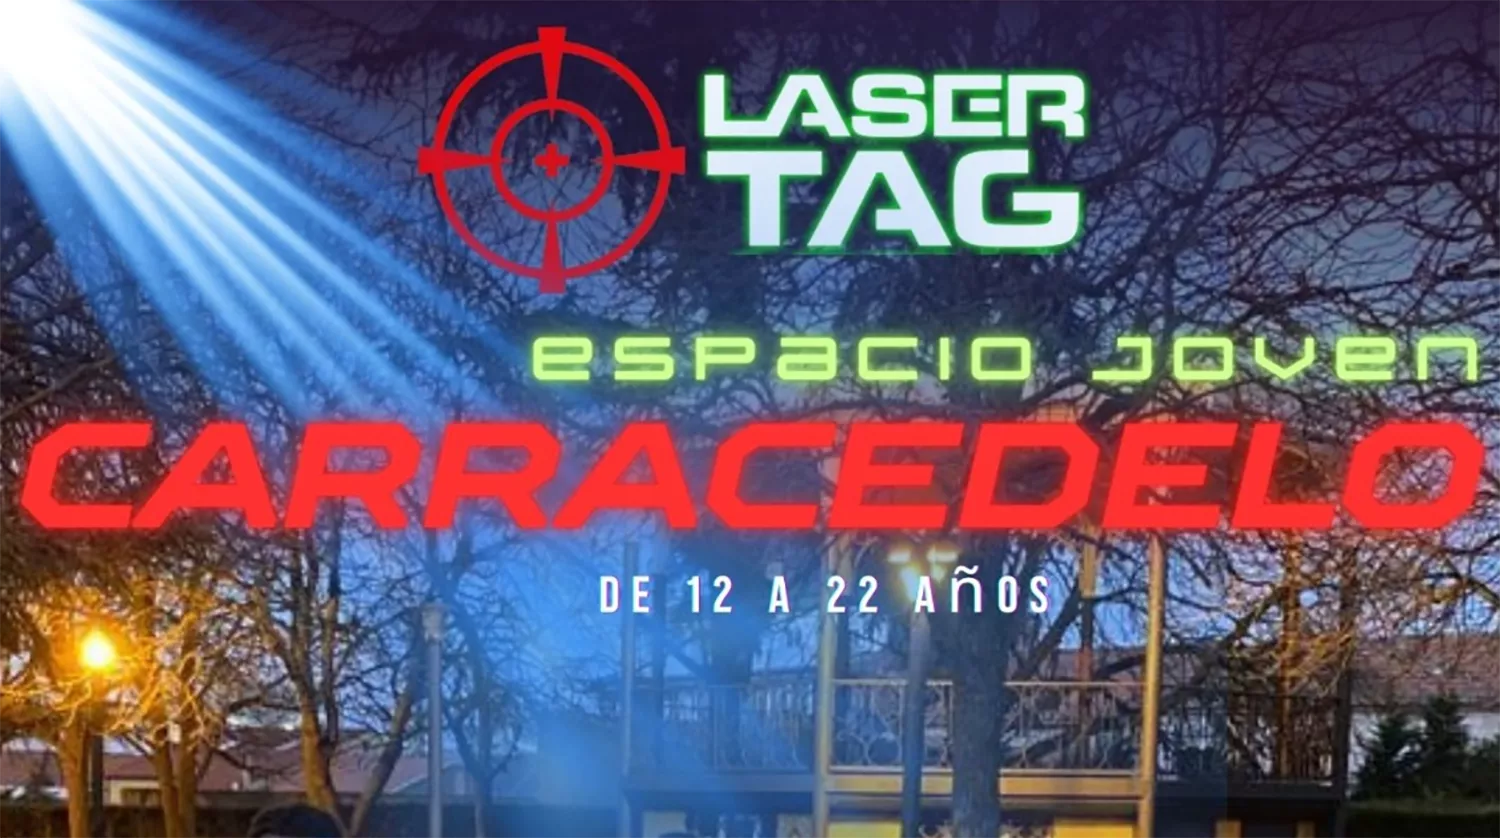 Carracedelo celebra una sesión de 'laser tag' en su Espacio joven